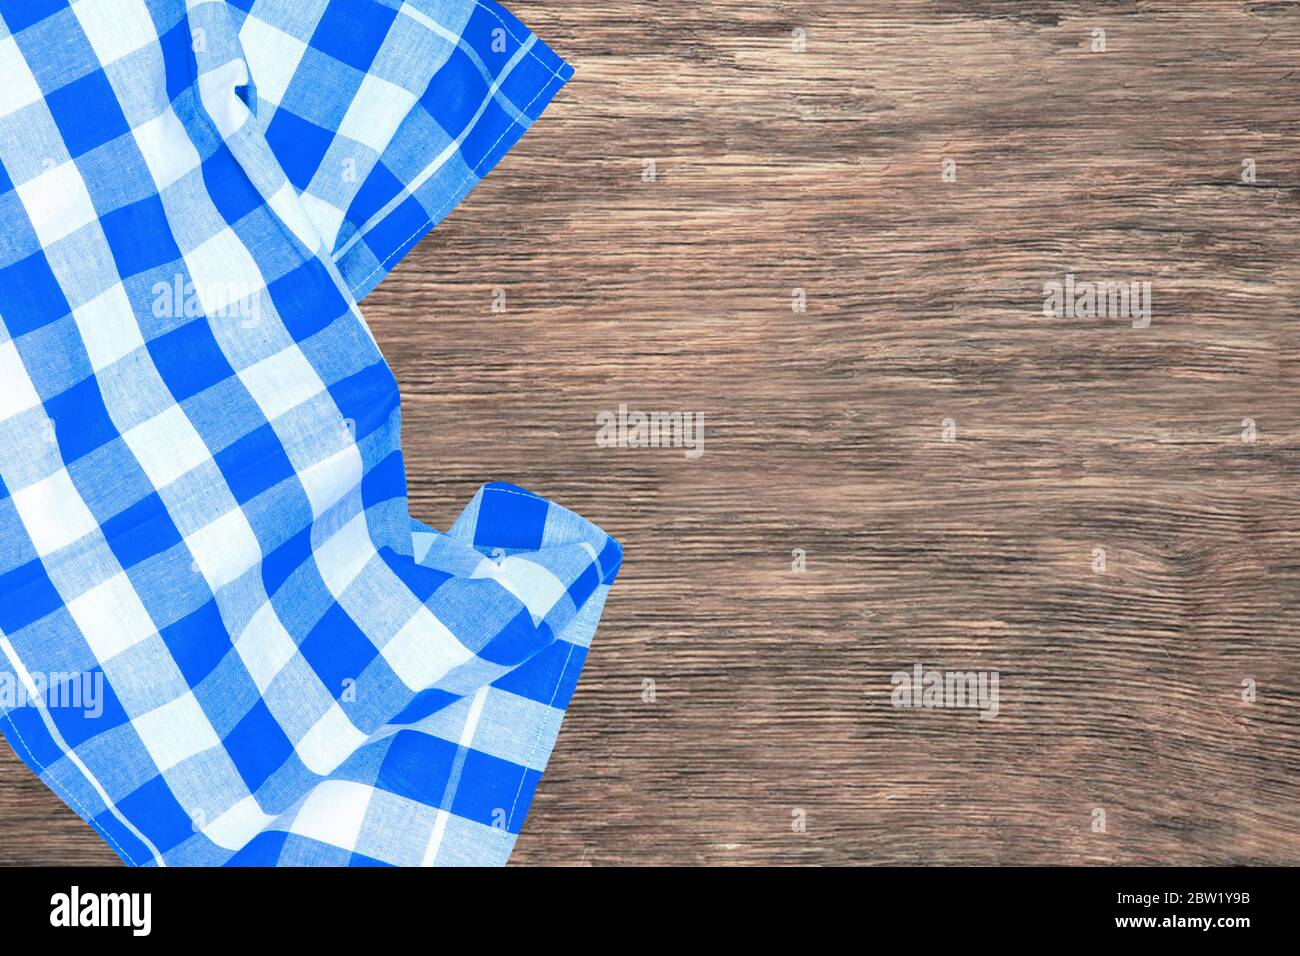 Topview aus blau kariertem Küchentuch, Textil, Tischdecke oder Serviette auf einem leeren rustikalen Holztisch. Vorlage für die Montage von Lebensmitteln und Produktdisplay. Stockfoto